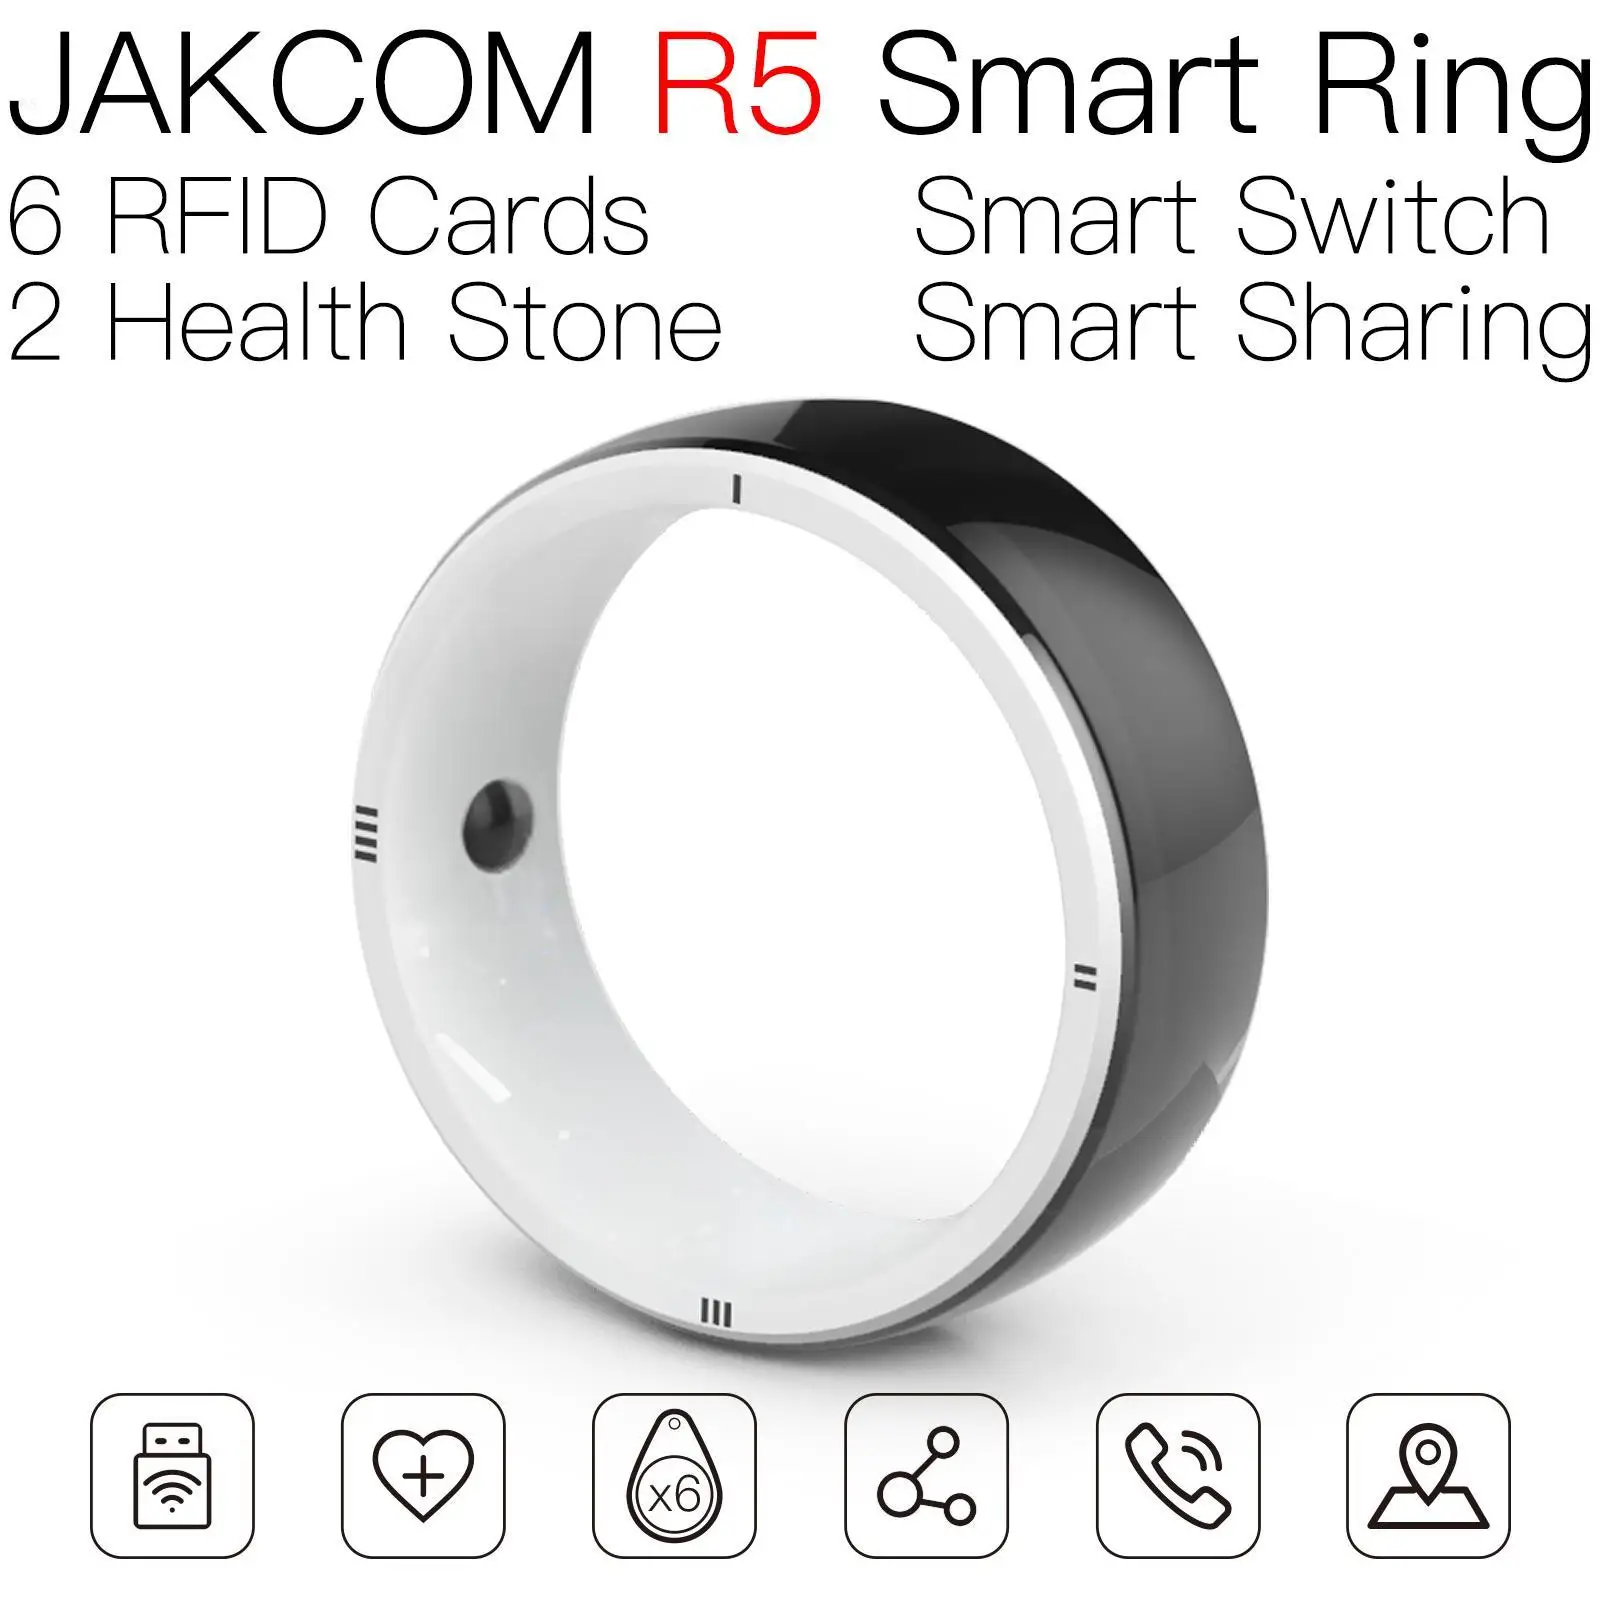 Умное кольцо JAKCOM R5 Приятнее, чем наклейки muraux galaxy watch, 3 гаджета для дома, воздушный насос для смартфона, 1 нож для ногтей